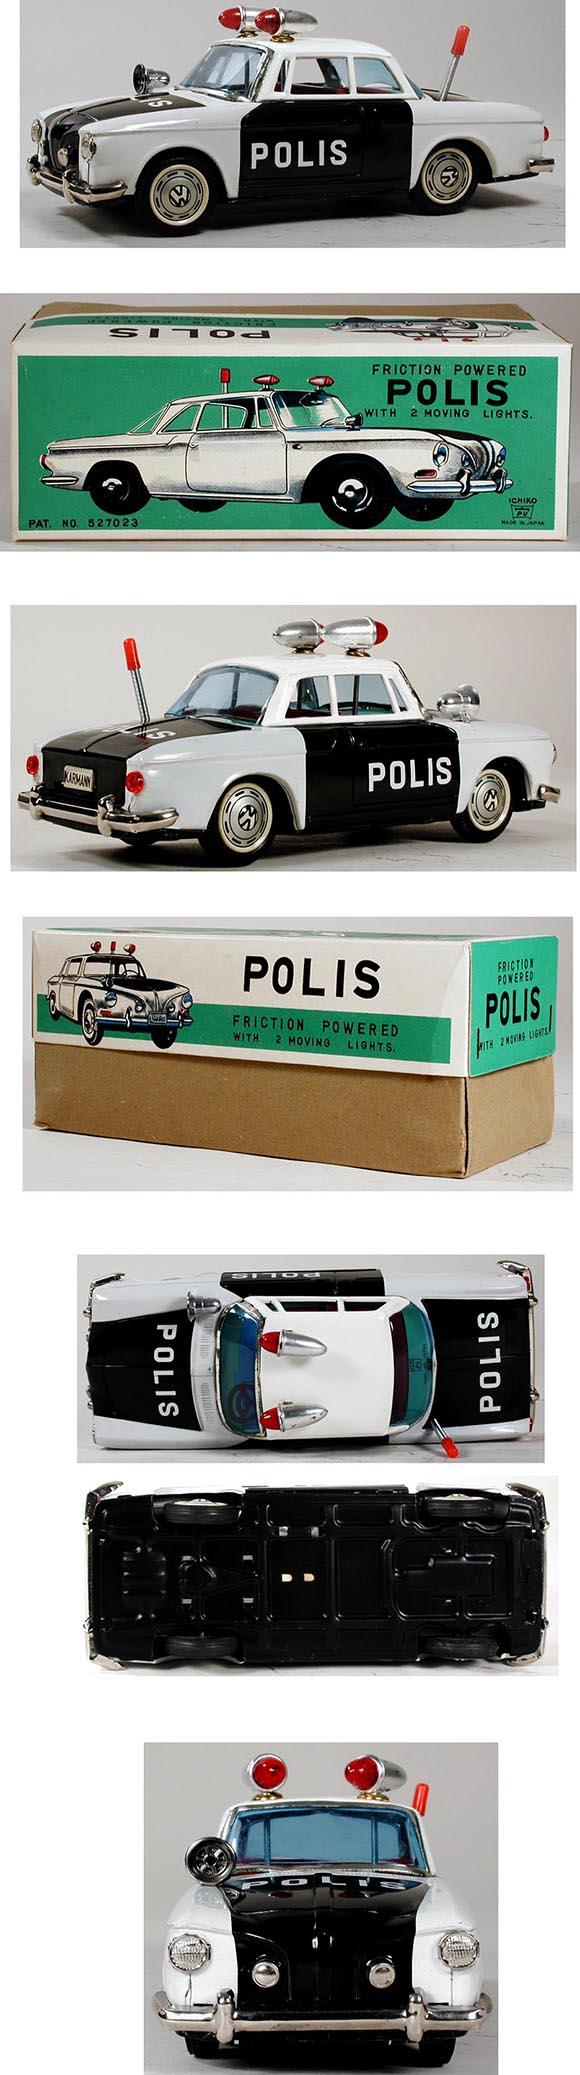 c.1963 Ichiko, Volkswagen Karmann Ghia Coupe Police Car in Original Box